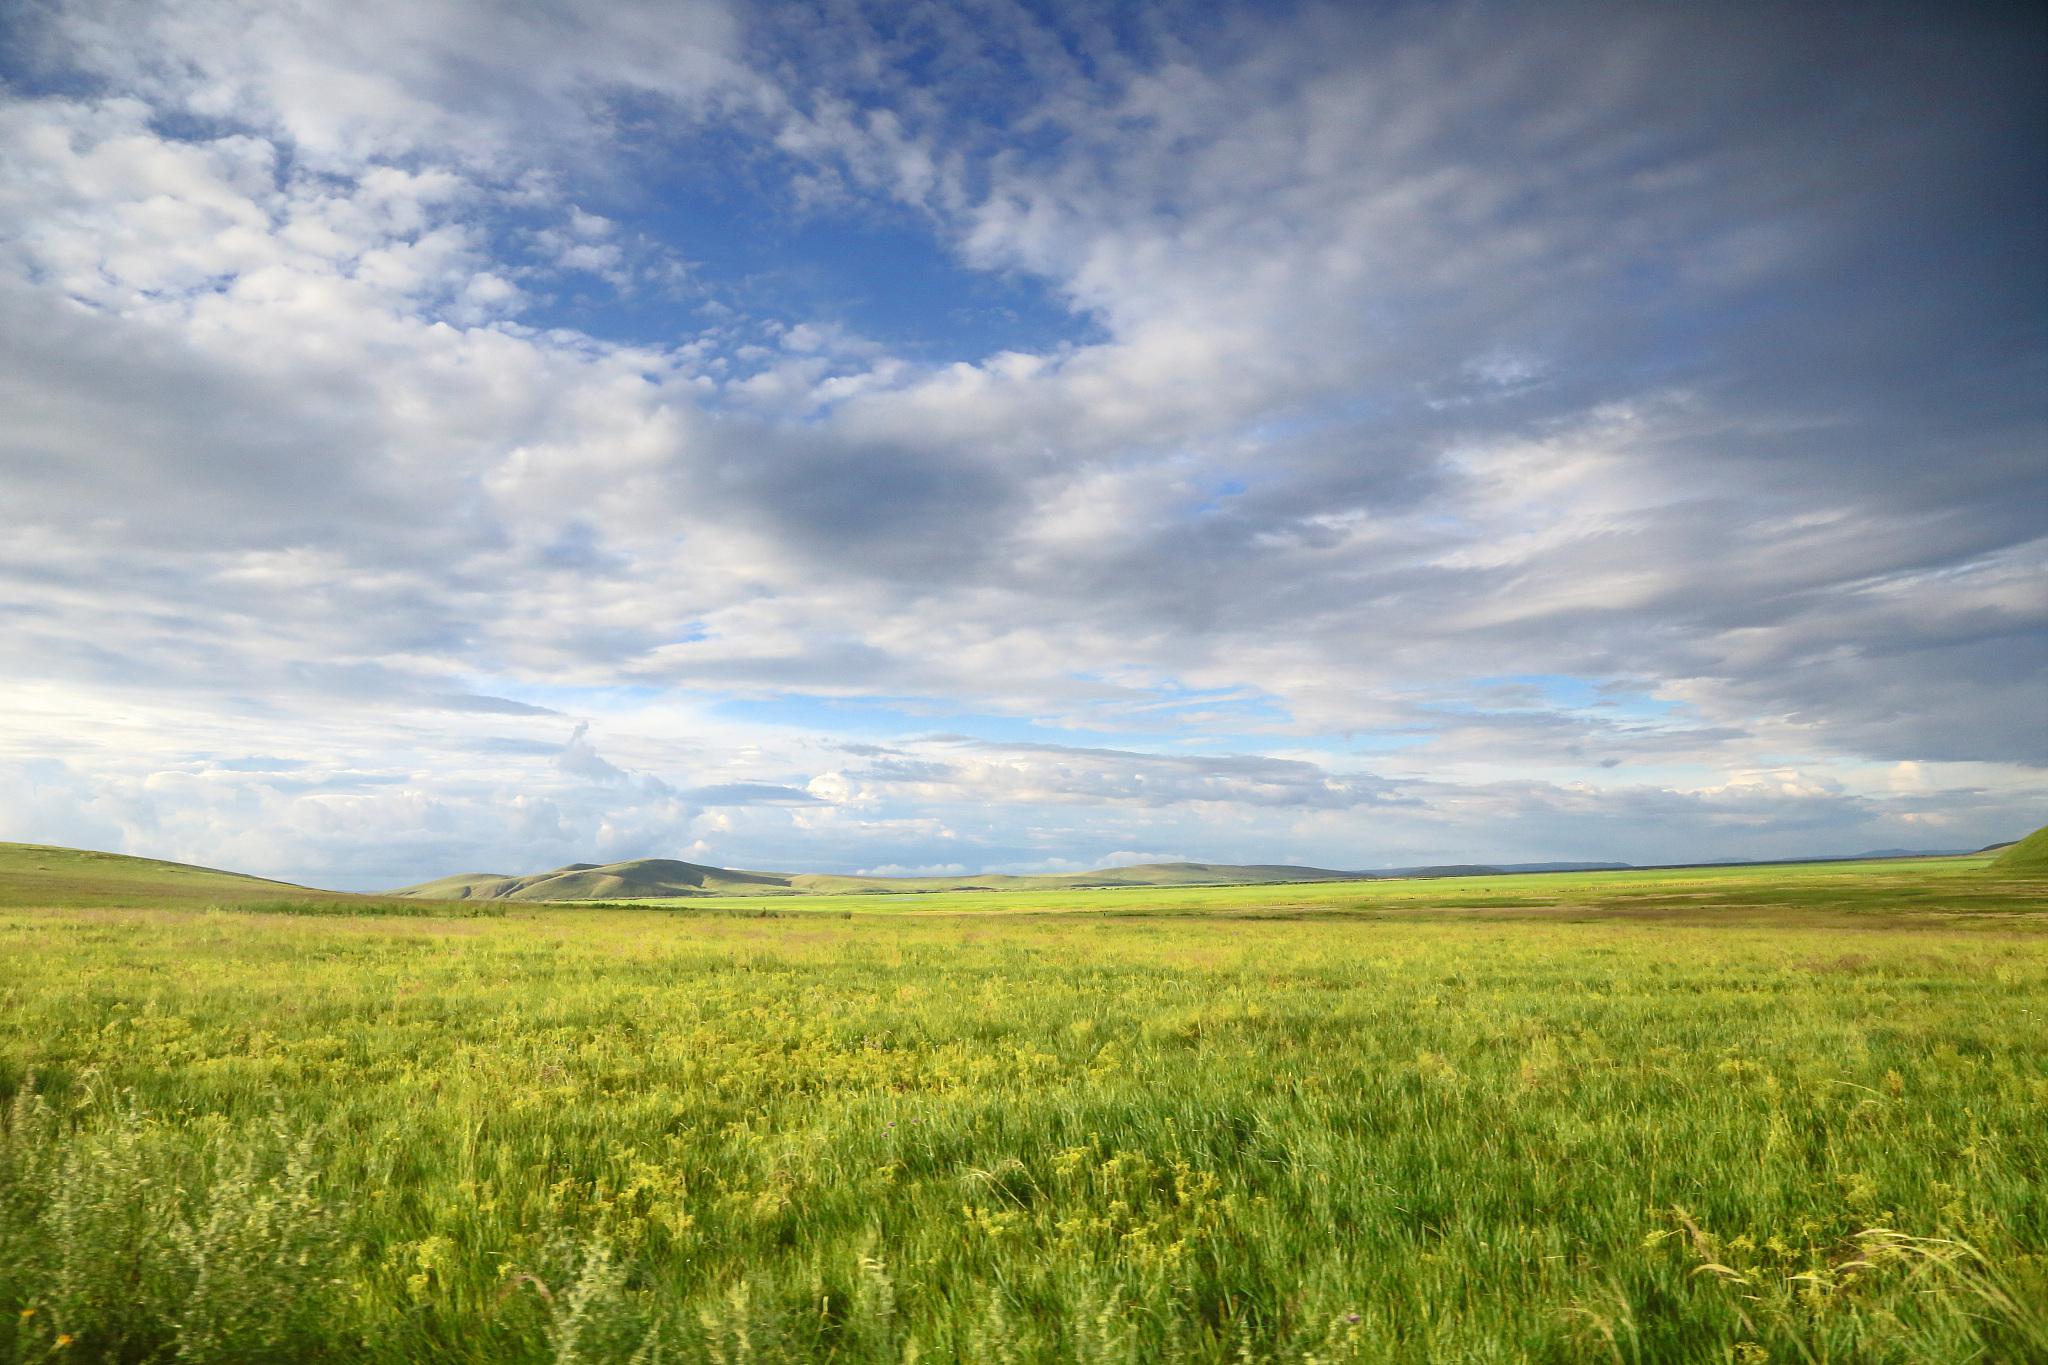 呼伦贝尔草原的自然风光 呼伦贝尔草原位于中国内蒙古自治区的东北部